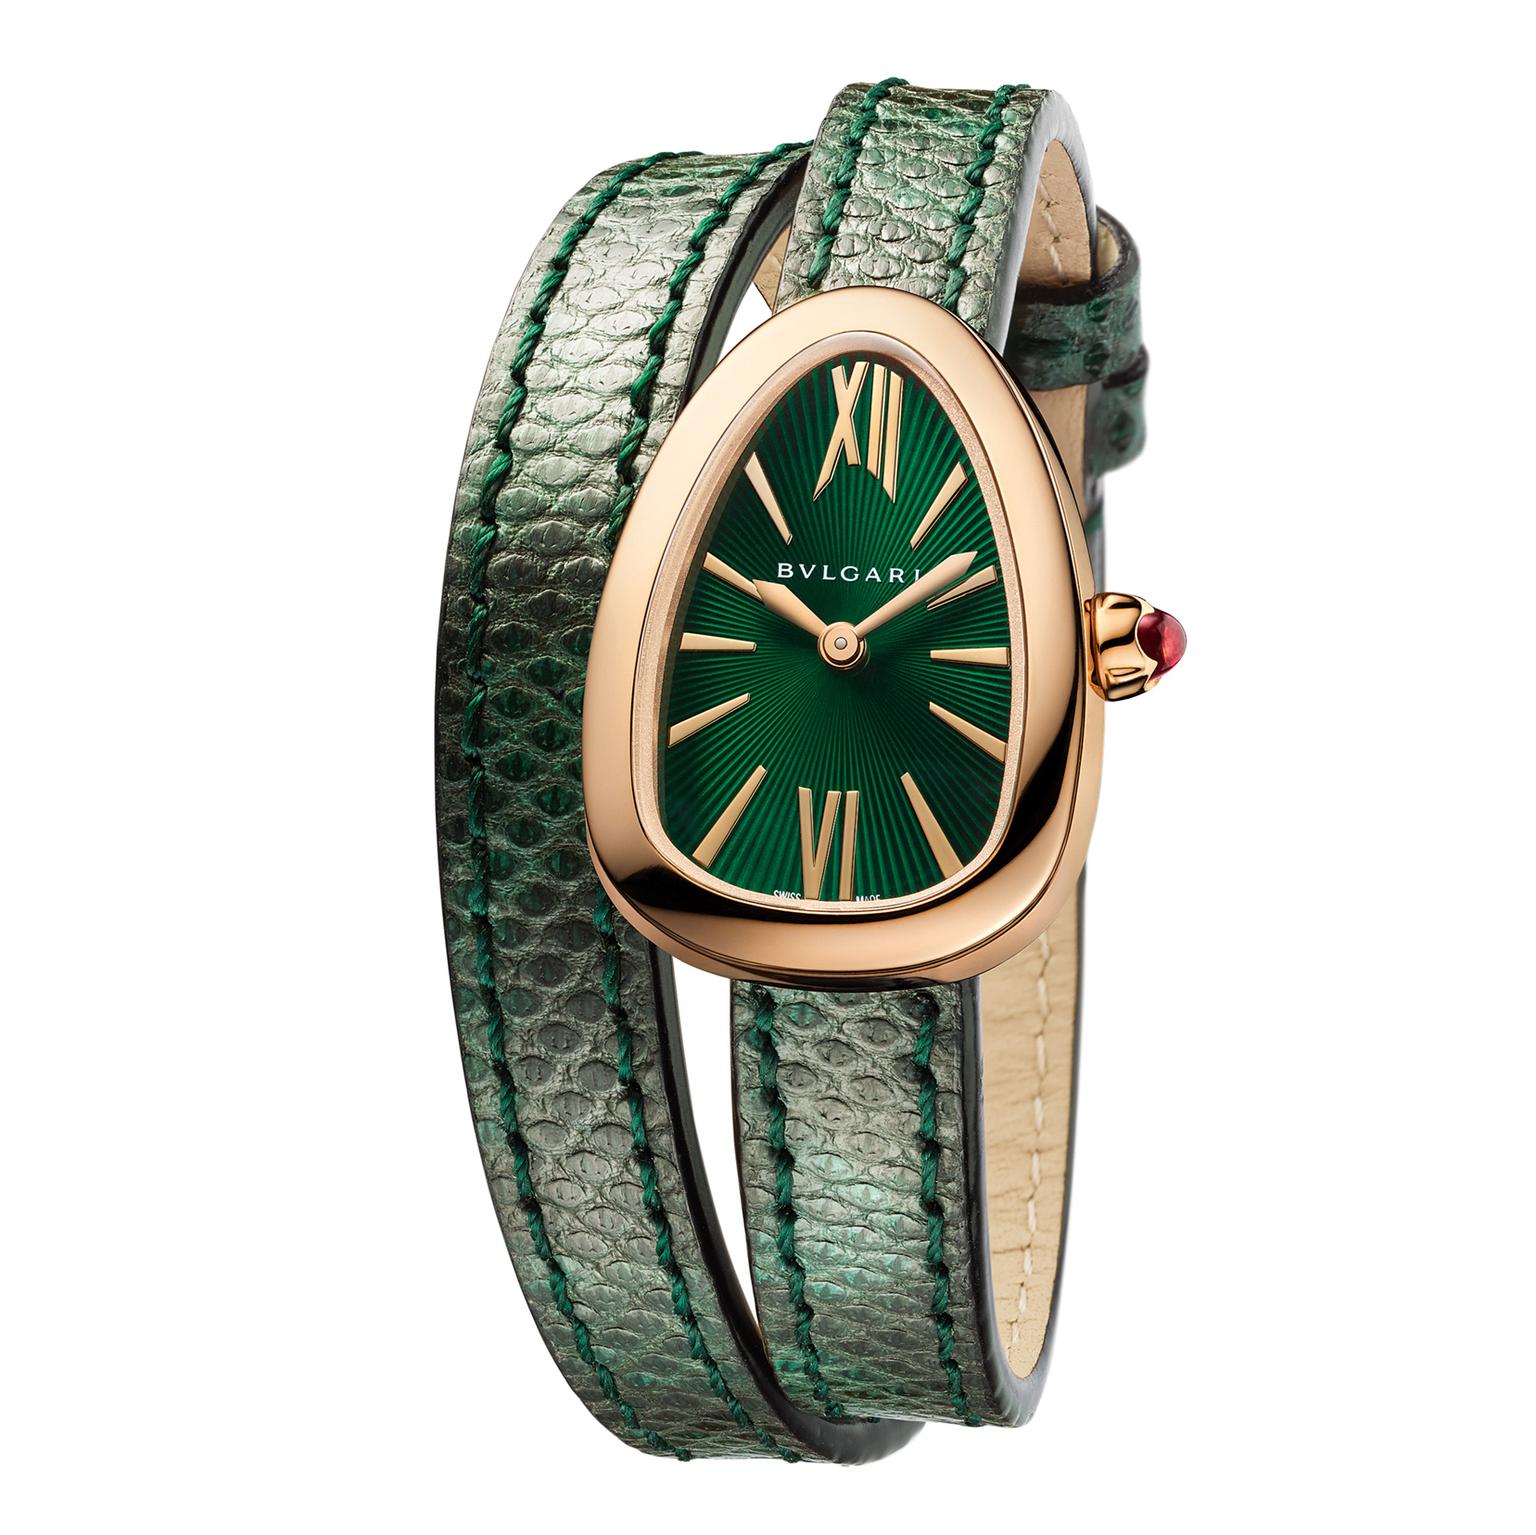 bvlgari green watch price